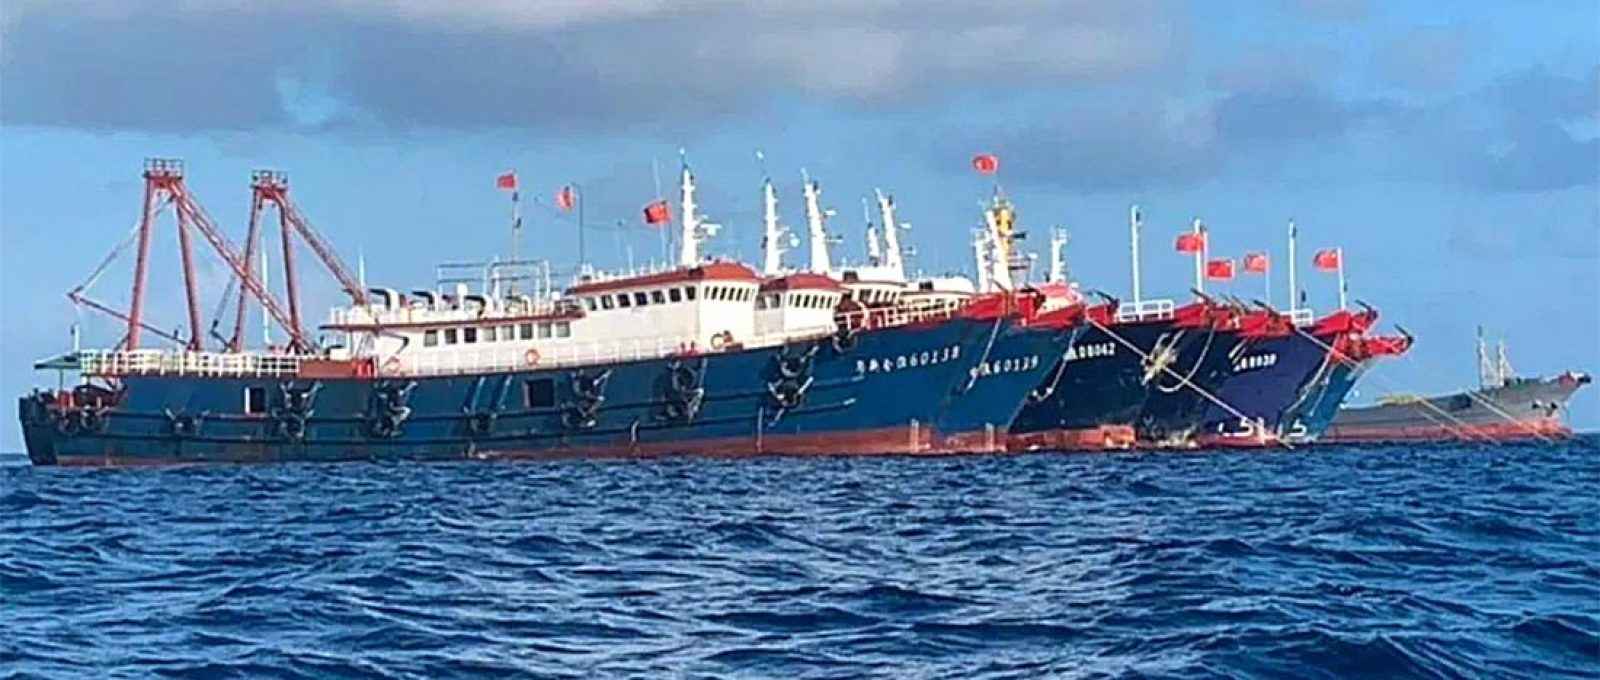 Nesta imagem da Força Tarefa Nacional do Mar das Filipinas Ocidental, navios chineses estão atracados no Whitsun Reef, no Mar do Sul da China, em 27 de março de 2021 (Foto: Governo das Filipinas).